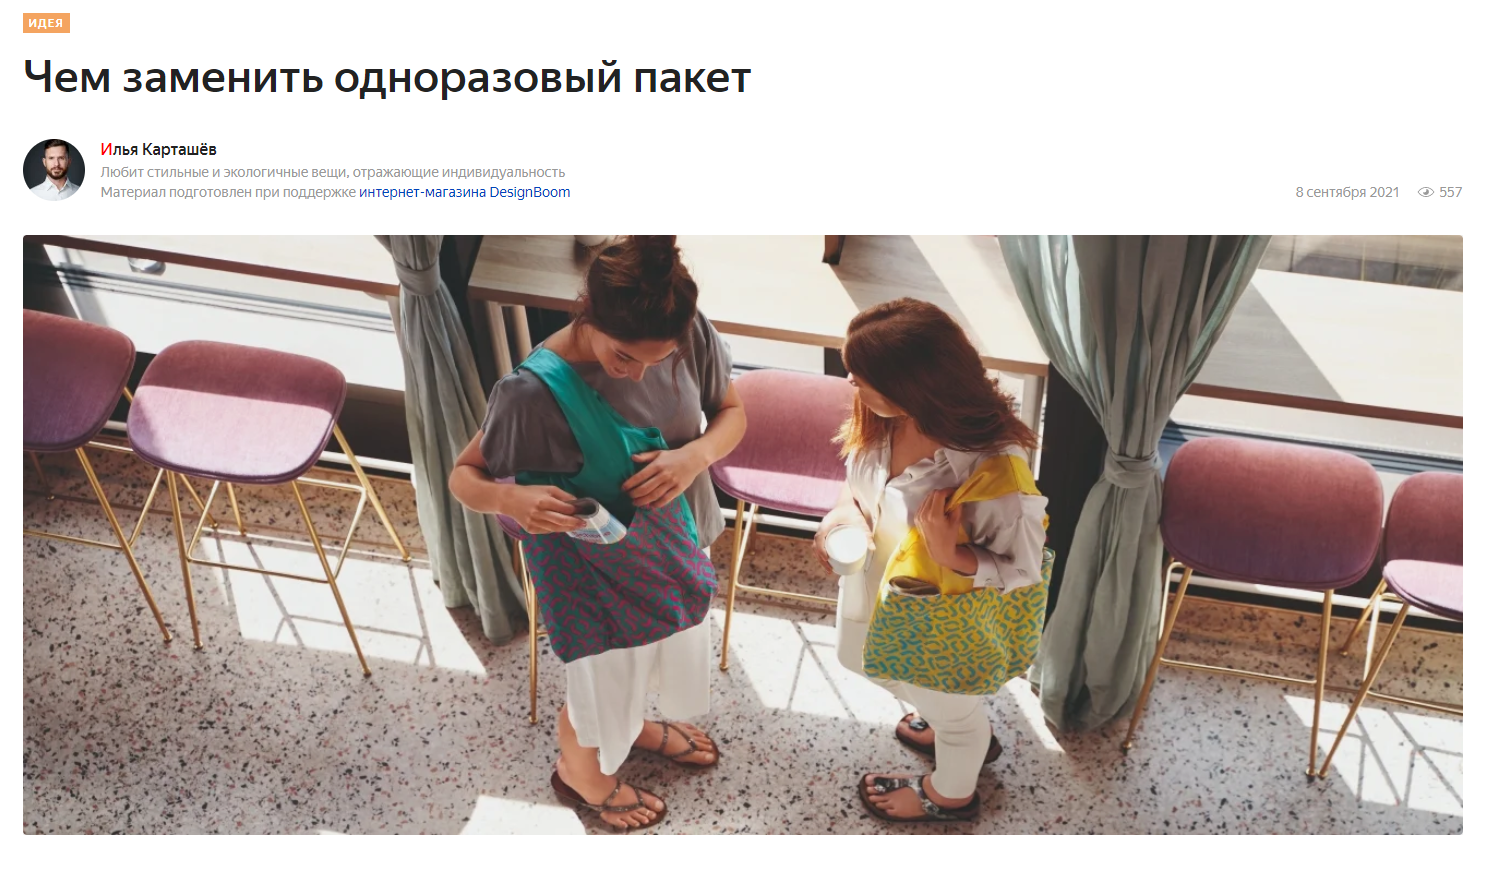 market.yandex.ru: сумки-авоськи из хлопка бренда Tkano в статье "Чем заменить одноразовый пакет"